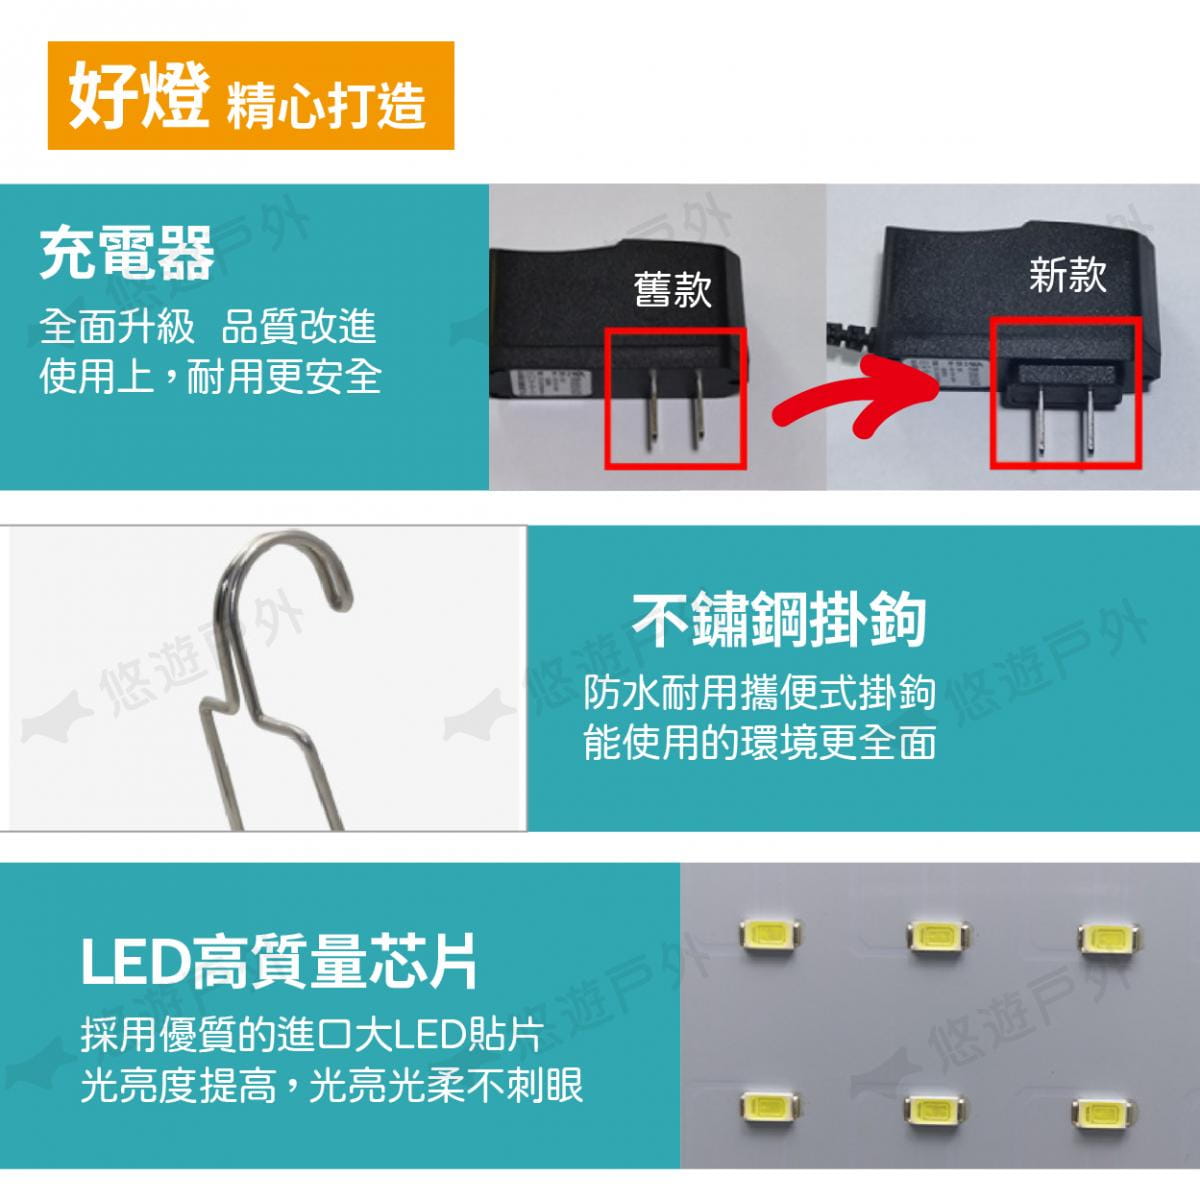 LED 磁吸 多功能節能燈_980W (悠遊戶外) 5